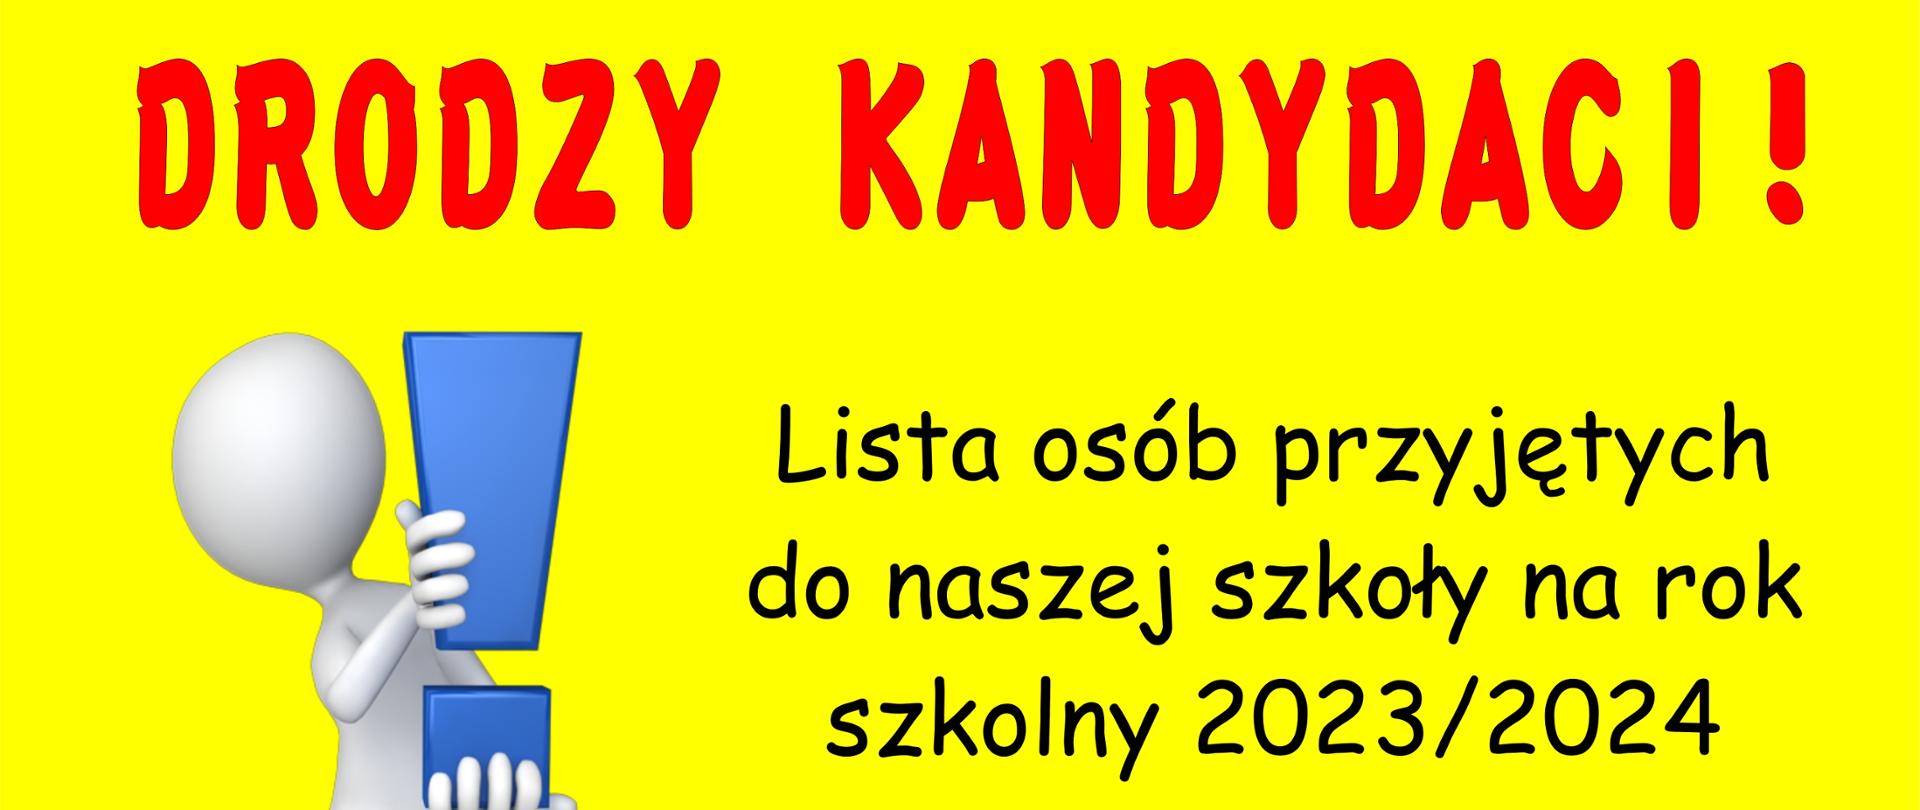 Lista osób przyjętych do naszej szkoły na rok szkolny 2023/2024 jest wywieszona w gablocie w holu PSM I st. w Zbąszyniu.